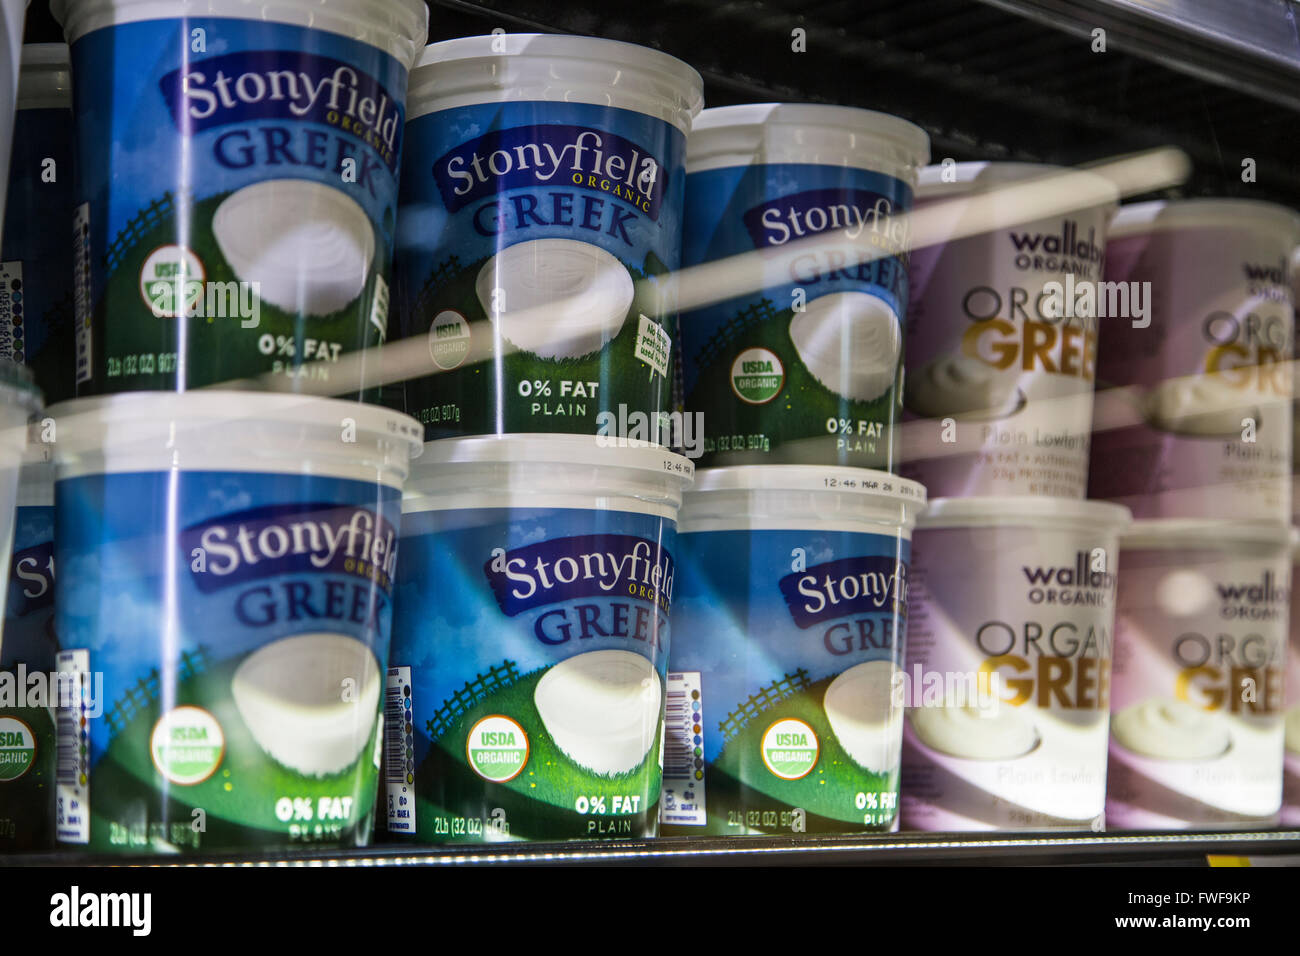 Stonyfield griechischer Joghurt in der Molkerei Fall ein Lebensmittelgeschäft Stockfoto